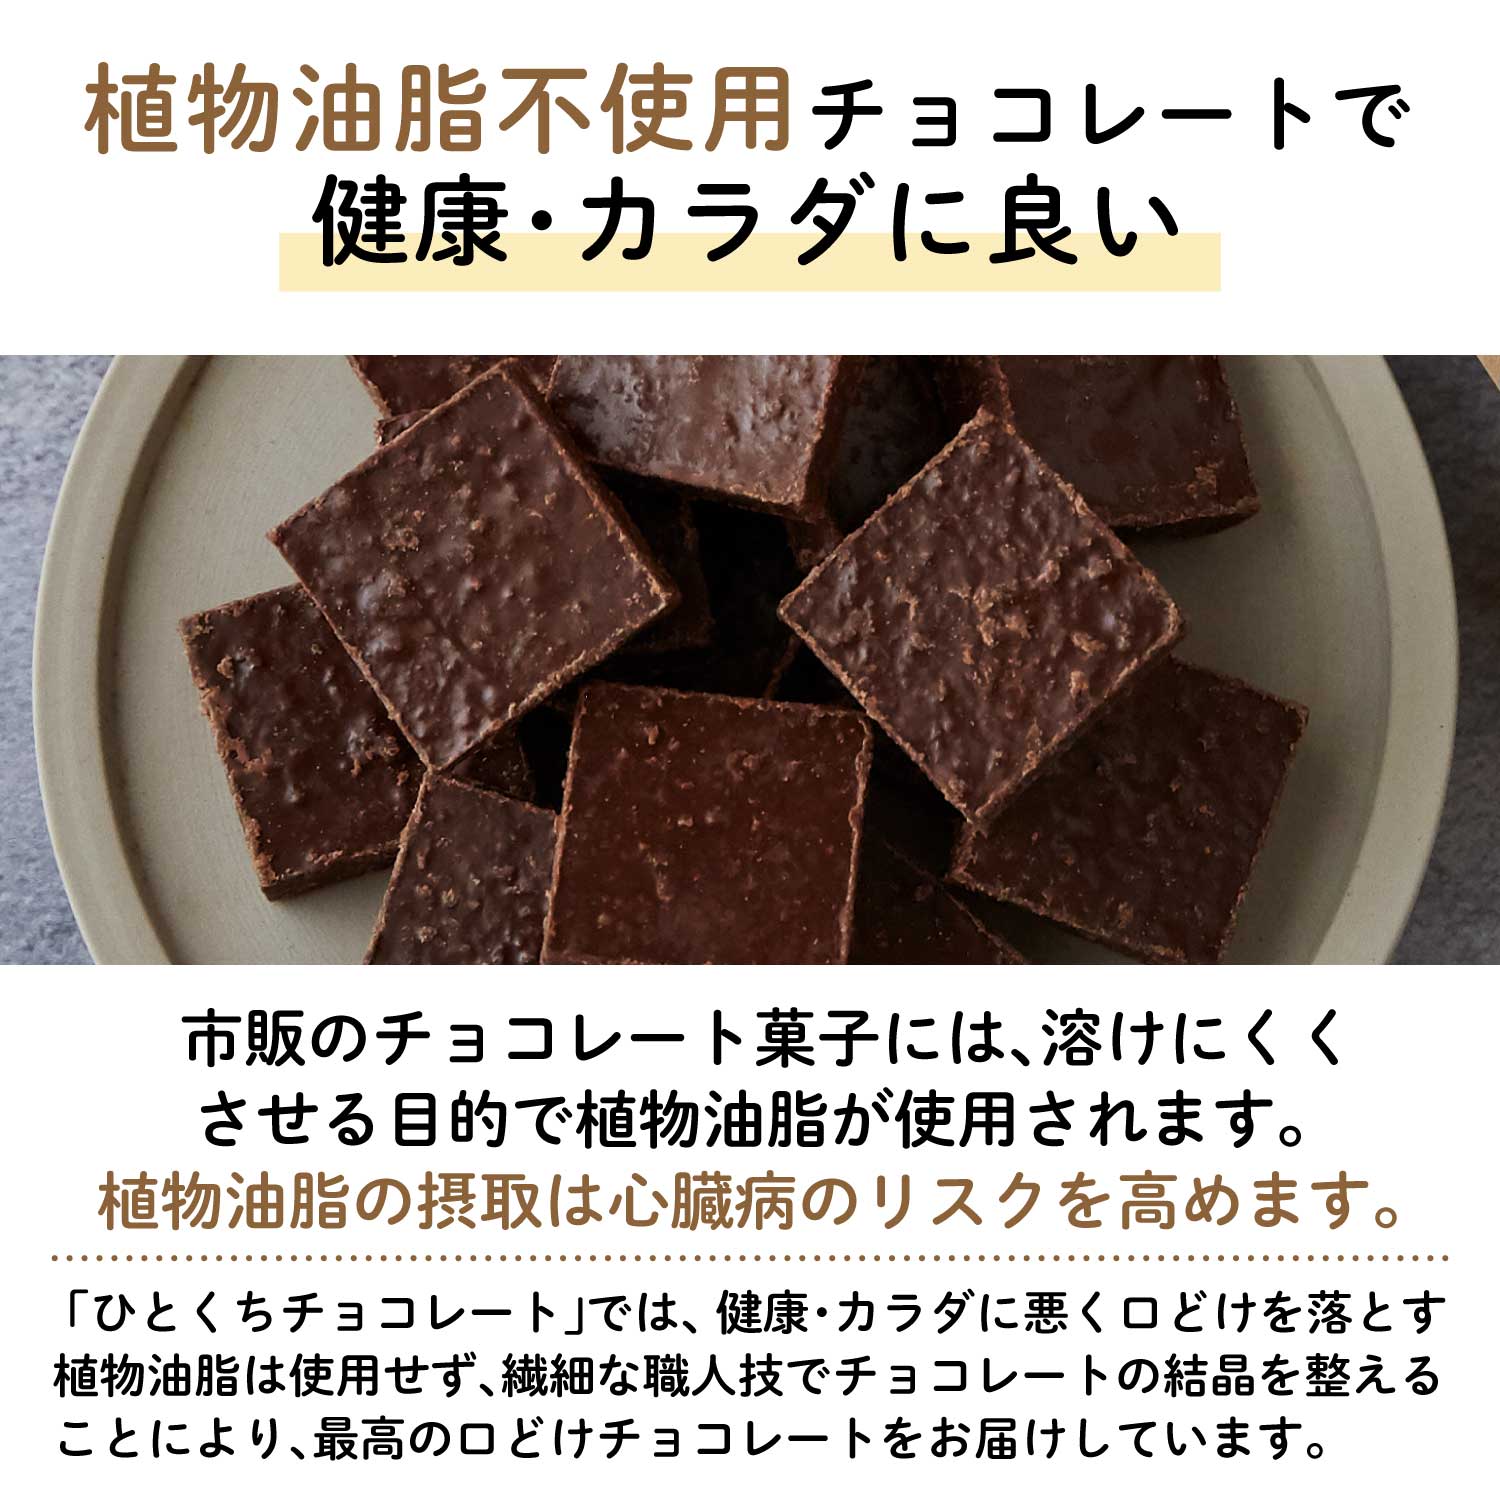 【たっぷりサイズ】プラリネチョコレート サクサク・オレンジ 130g